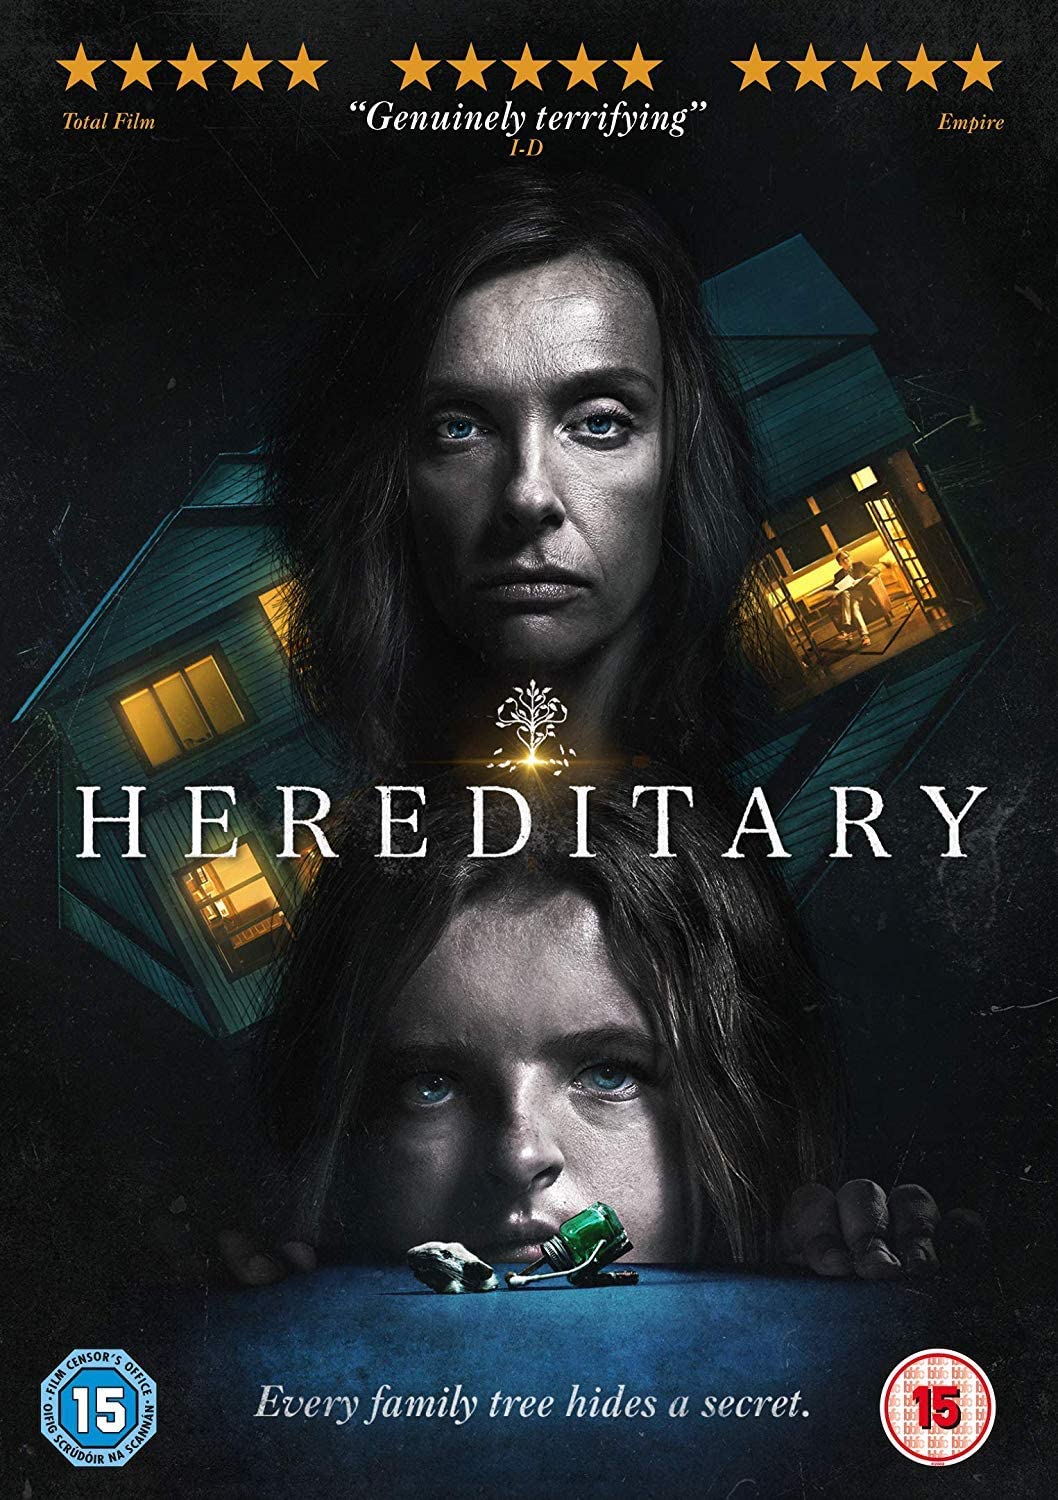 Hereditary [2018] – Horror/Drama [DVD]